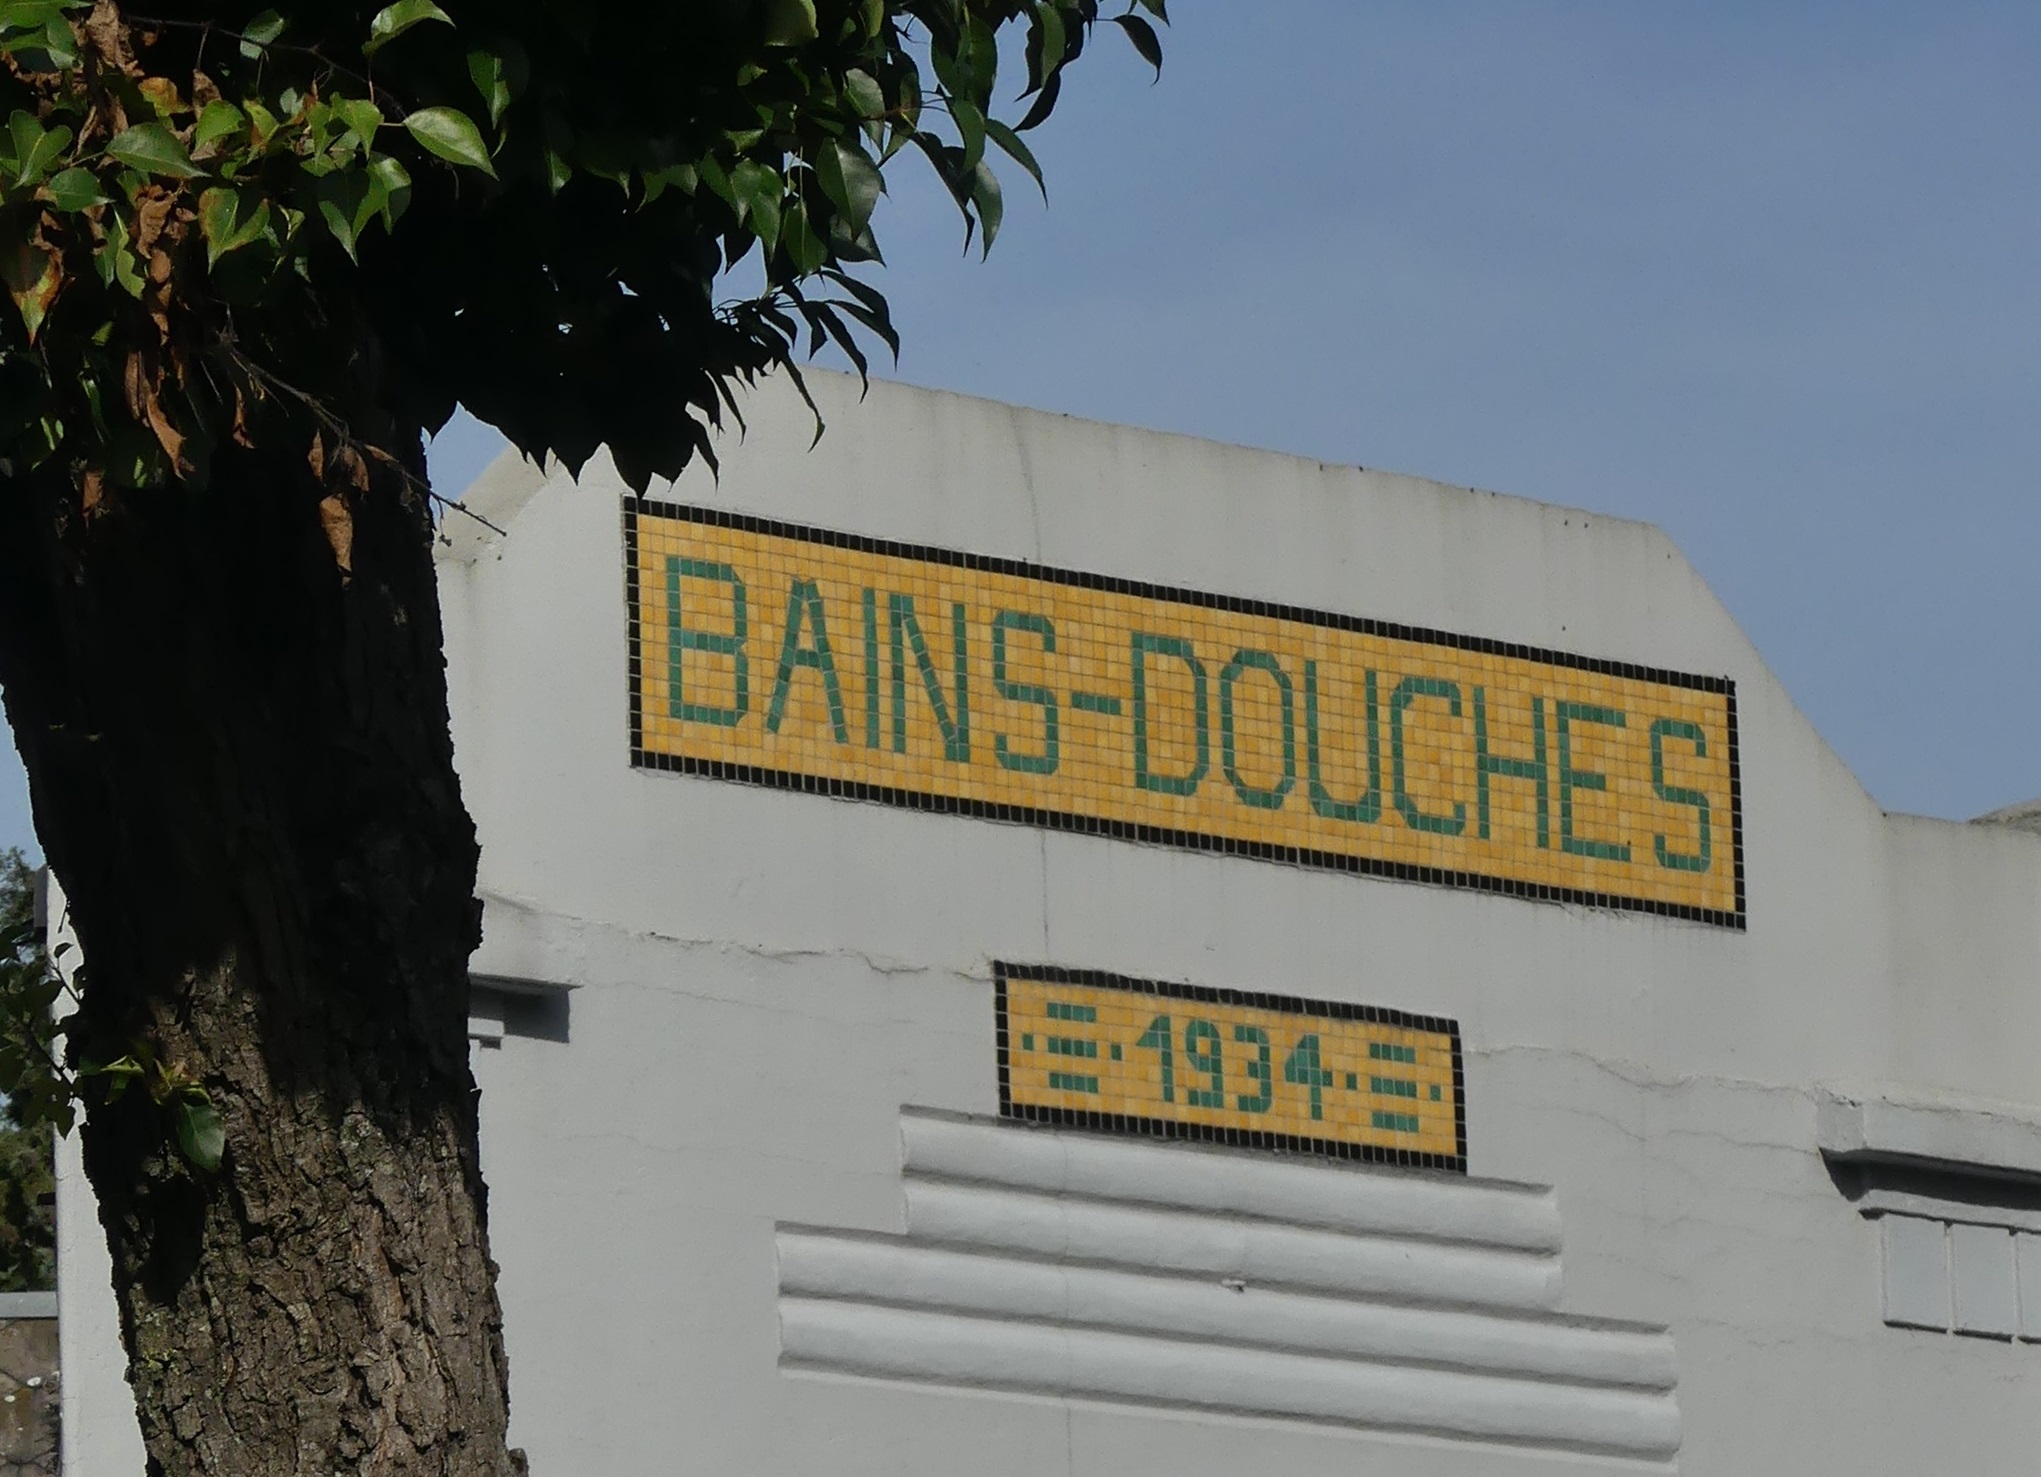 5-Bains douche - Saint Ouen - @OTNS